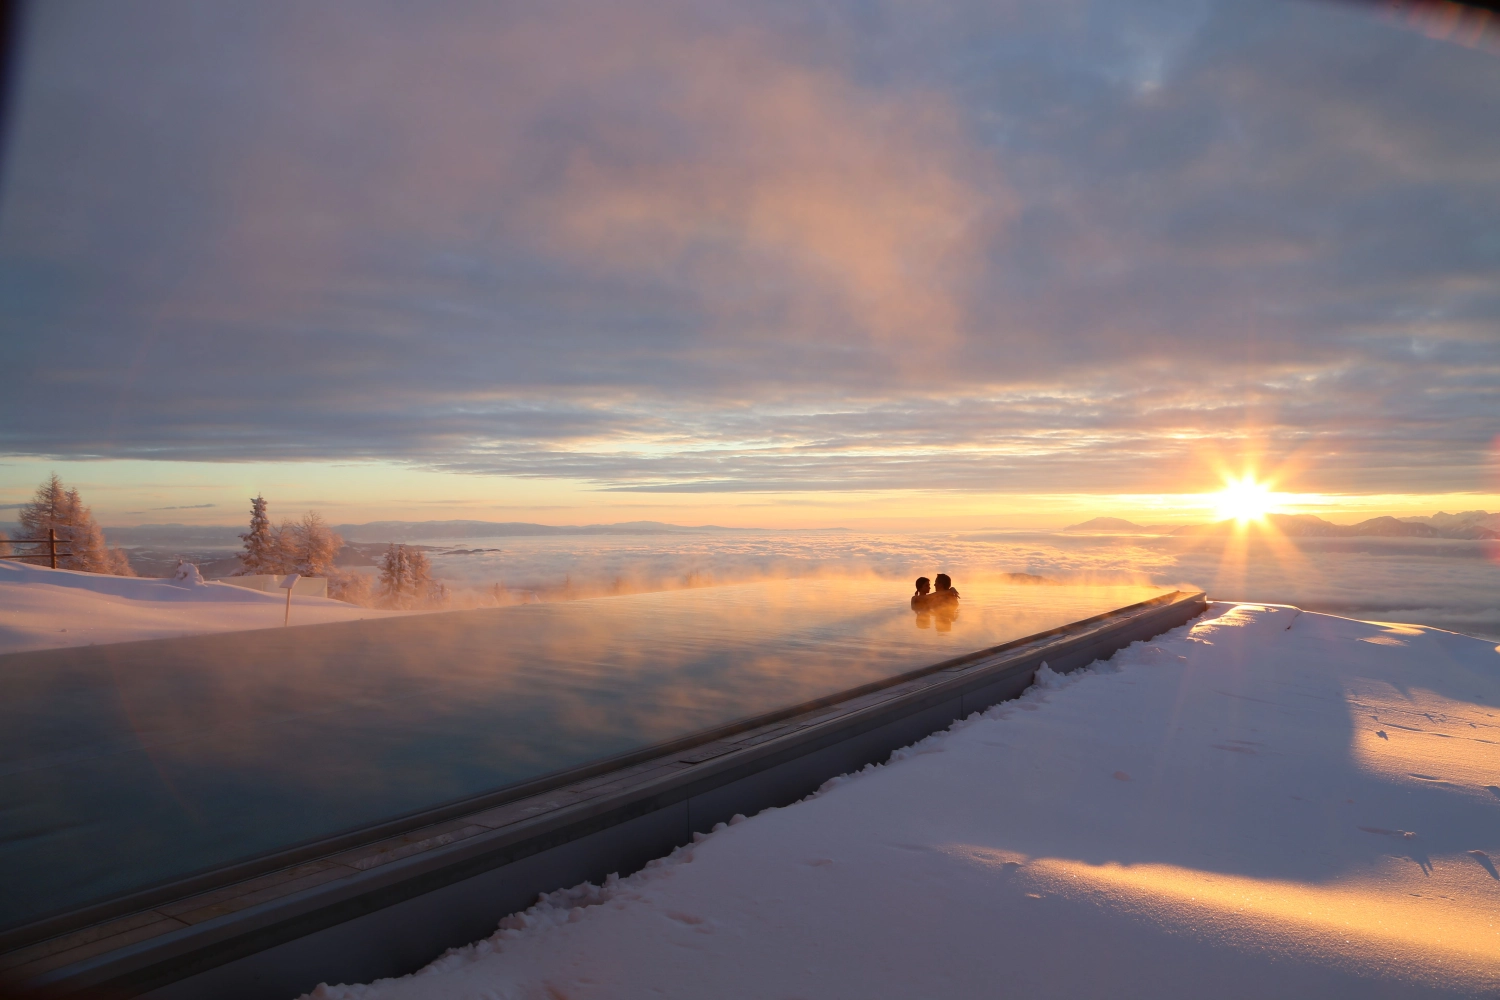 Schönsten Hotelpools in den Alpen Winter 2024